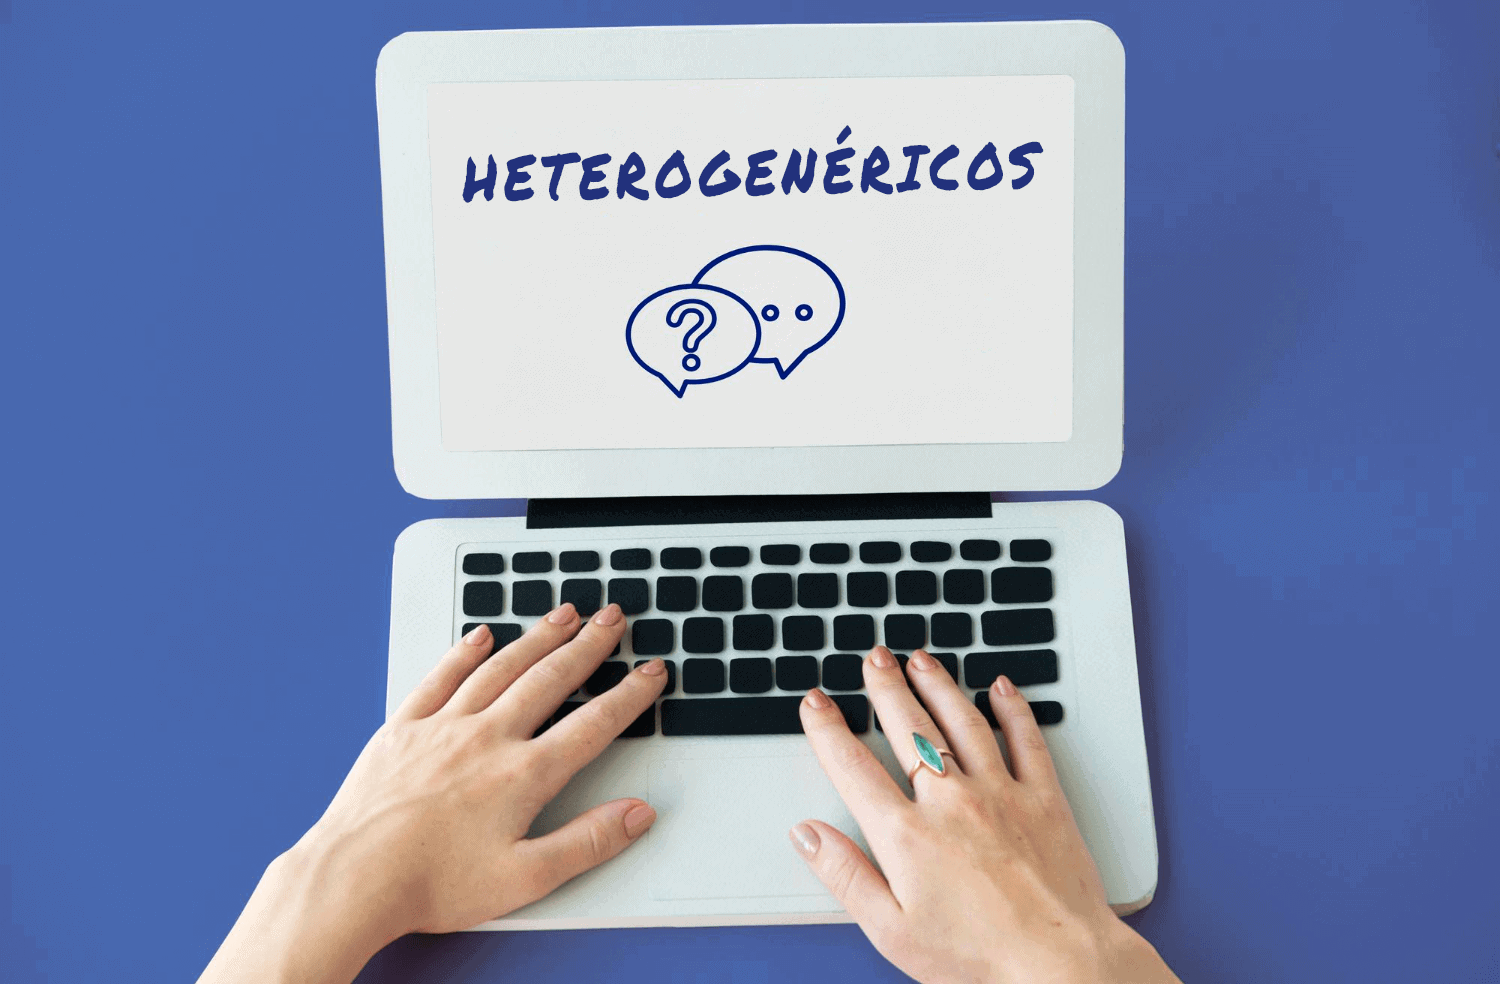 heterogenericos espanhol